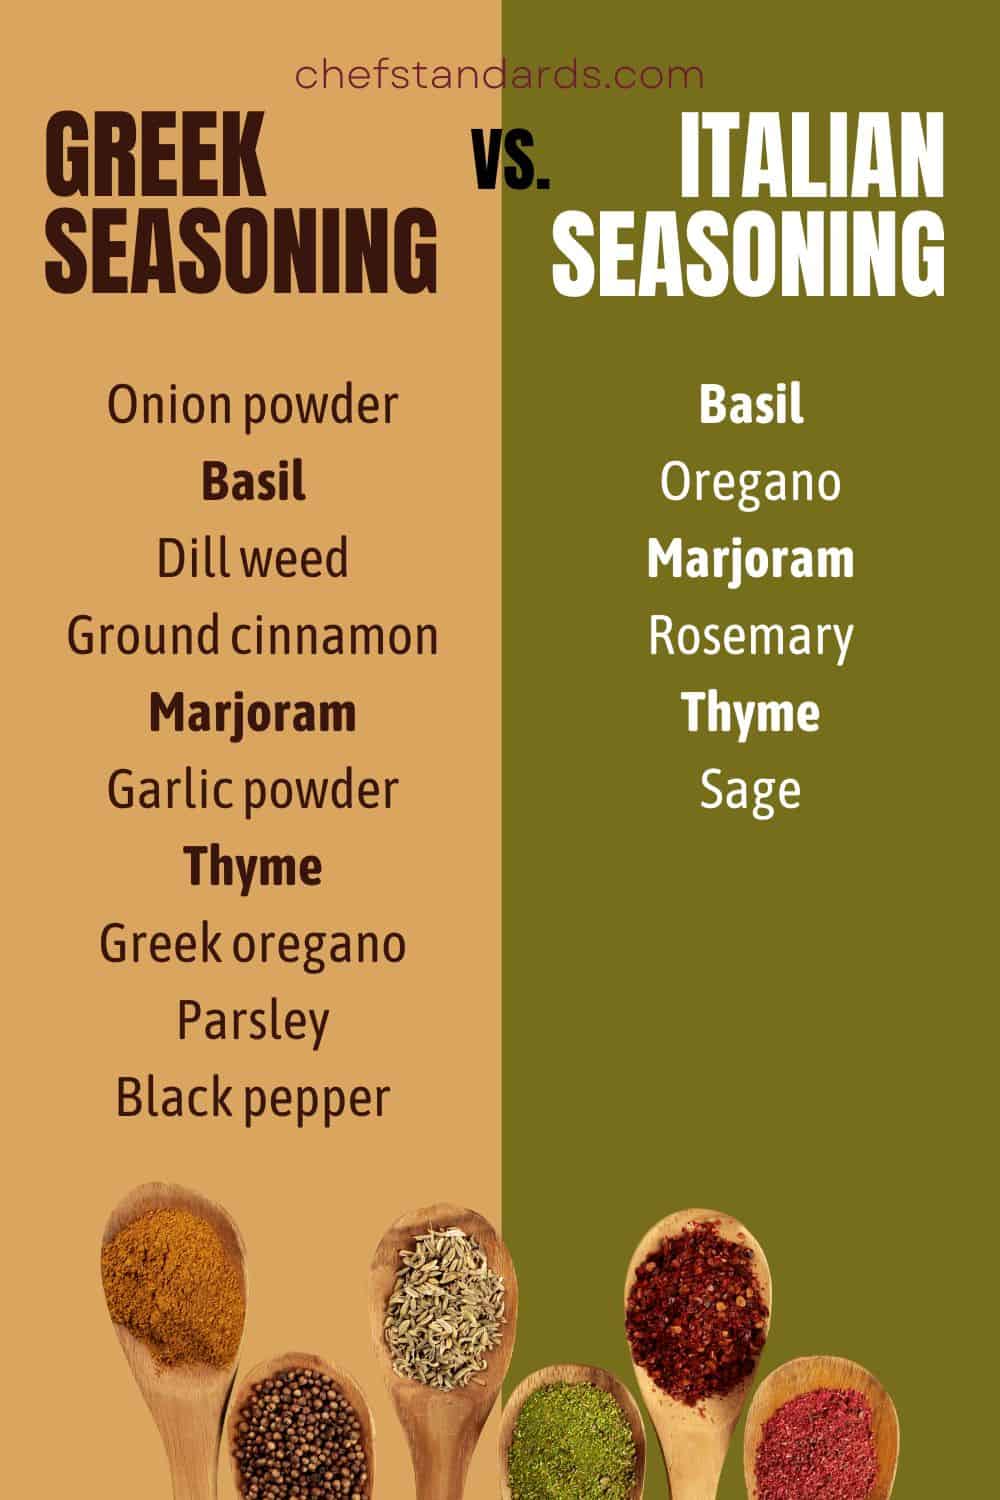 Greek seasoning vs. Italian seasoning